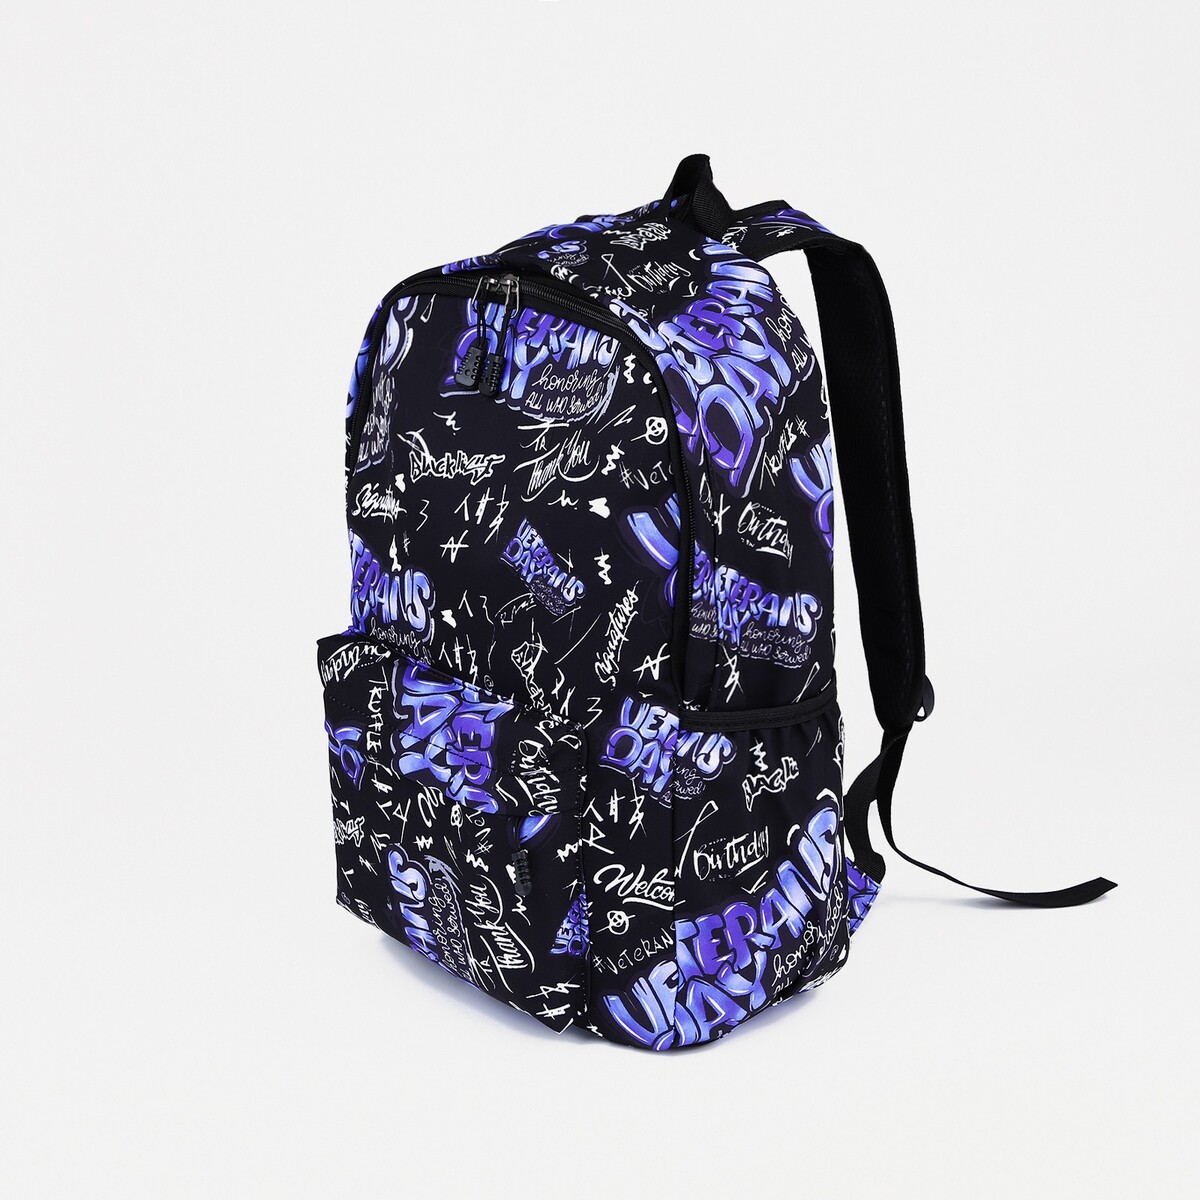 Рюкзак на молнии, 3 наружных кармана, цвет фиолетовый/черный рюкзак школьный из текстиля на молнии 3 кармана пенал фиолетовый